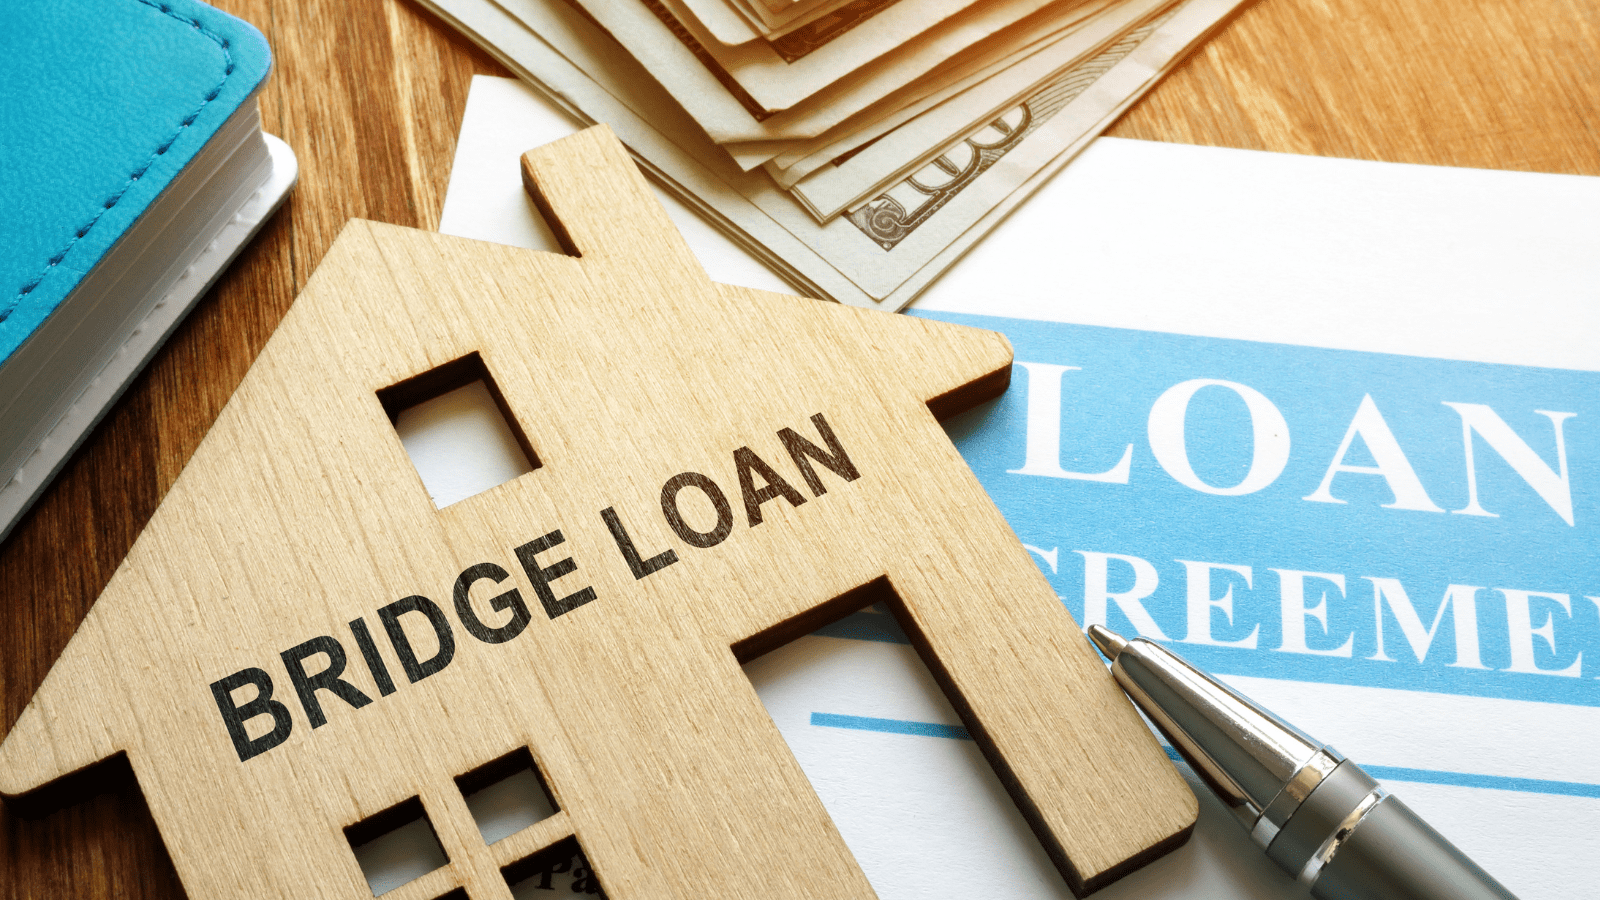 What is a Bridge Loan?